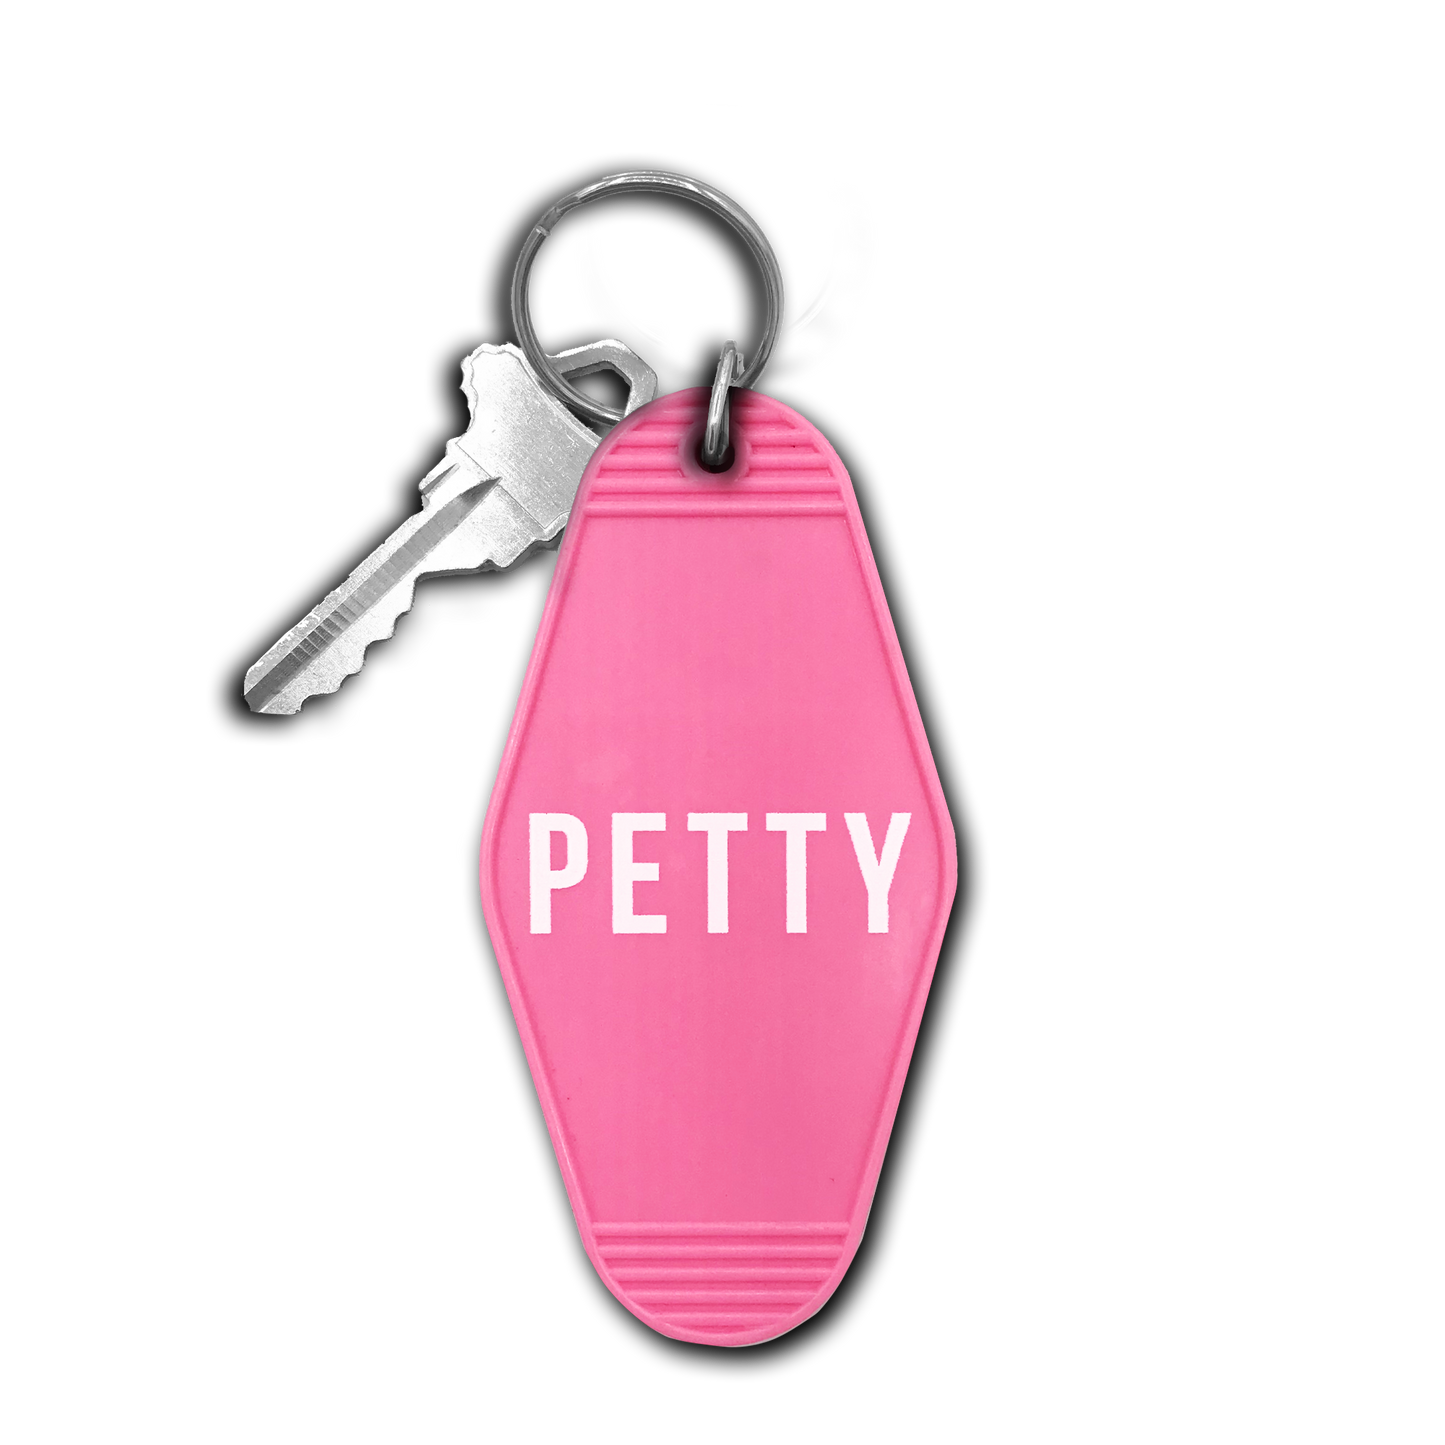 Petty Keychain